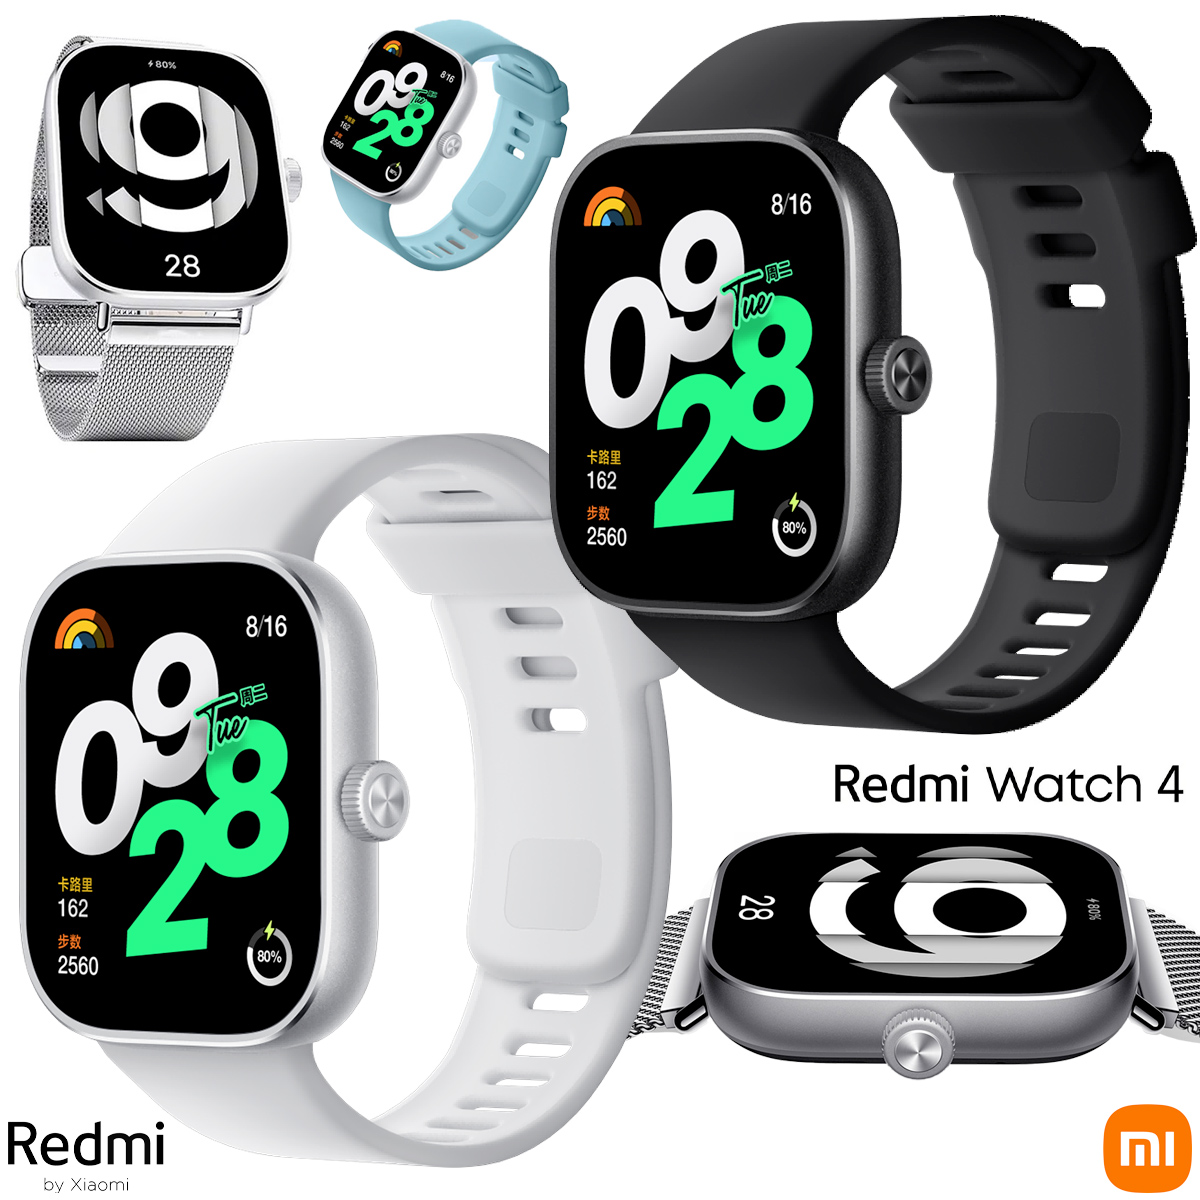 Relógio smartwatch Redmi Watch 4 - Digital Drops